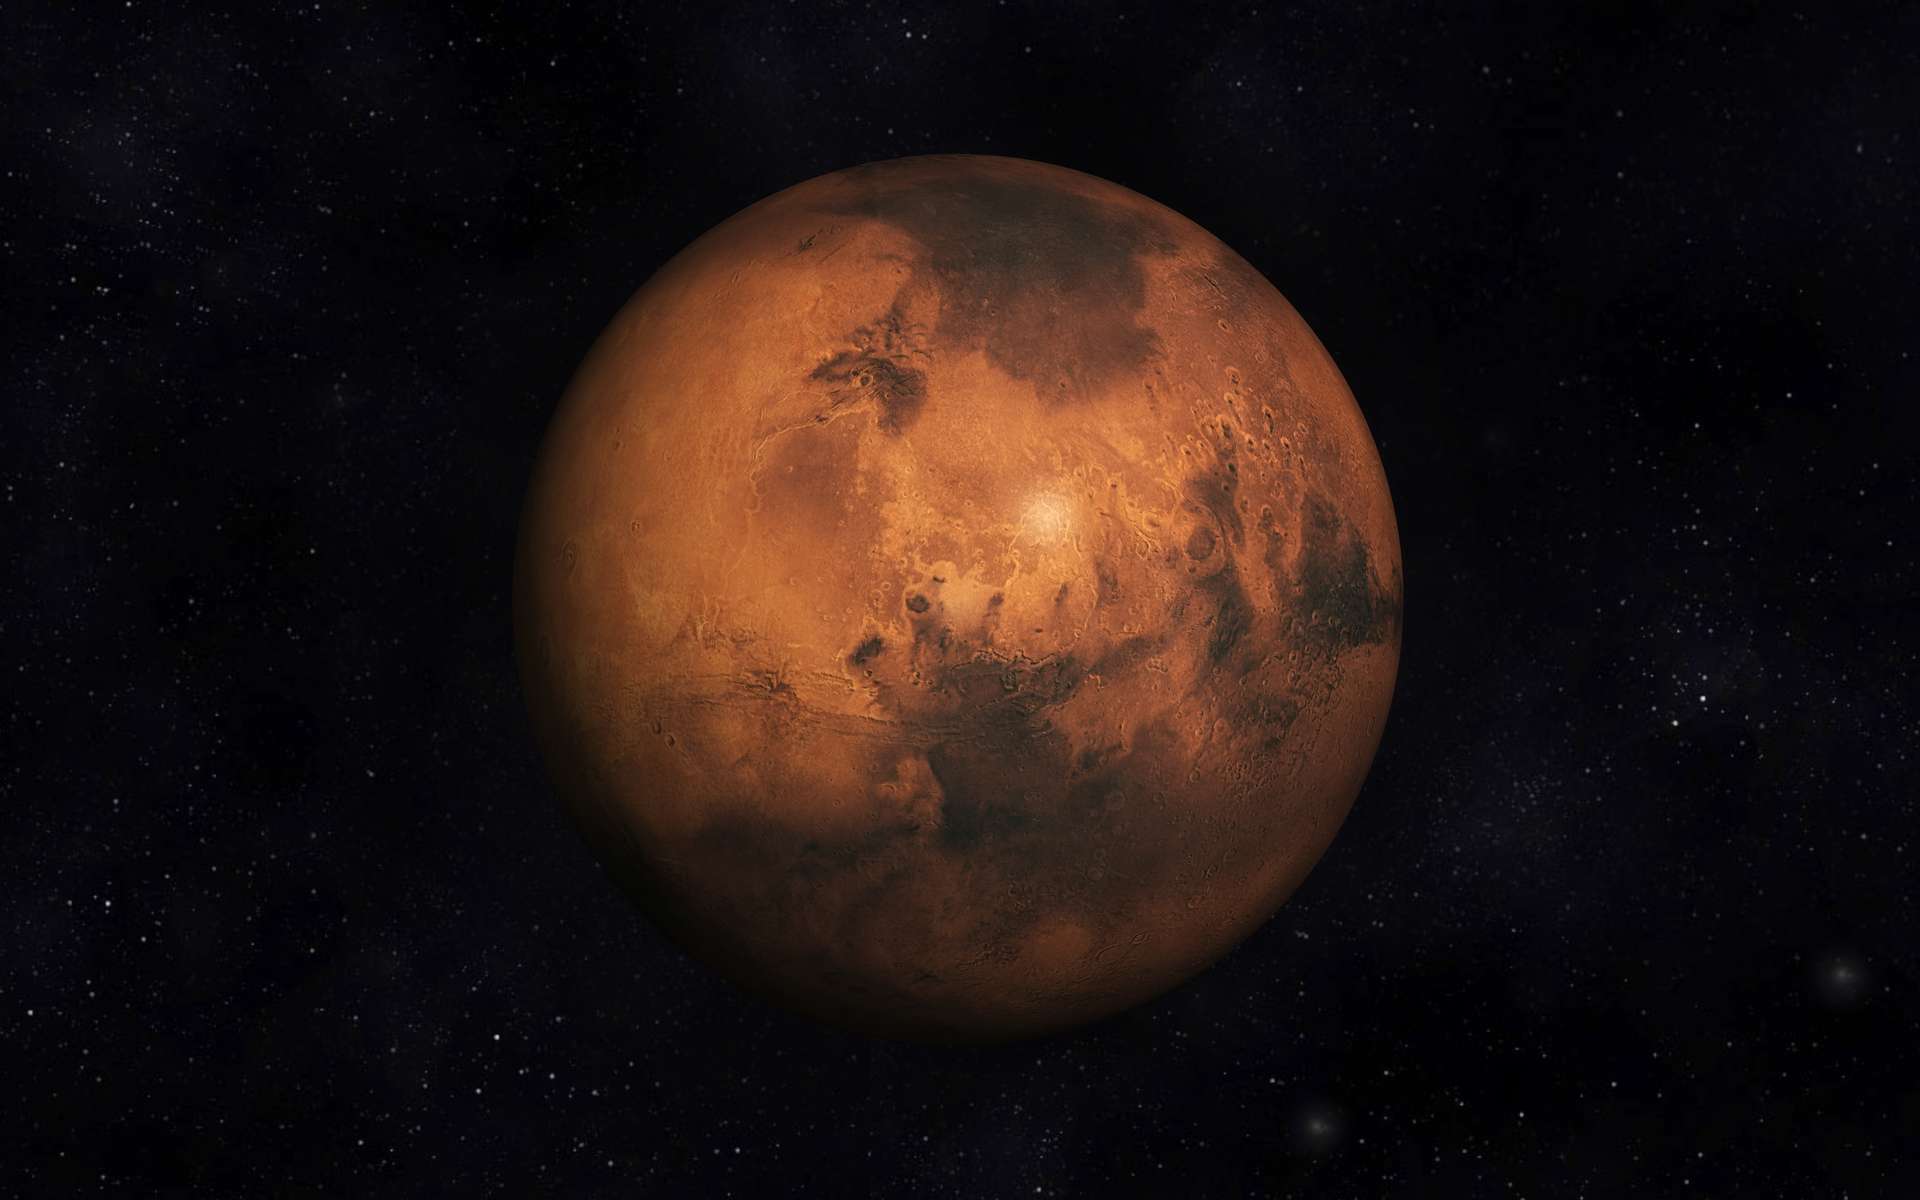 Les plus belles photos de Mars prises depuis les jardins et balcons d'astronomes amateurs